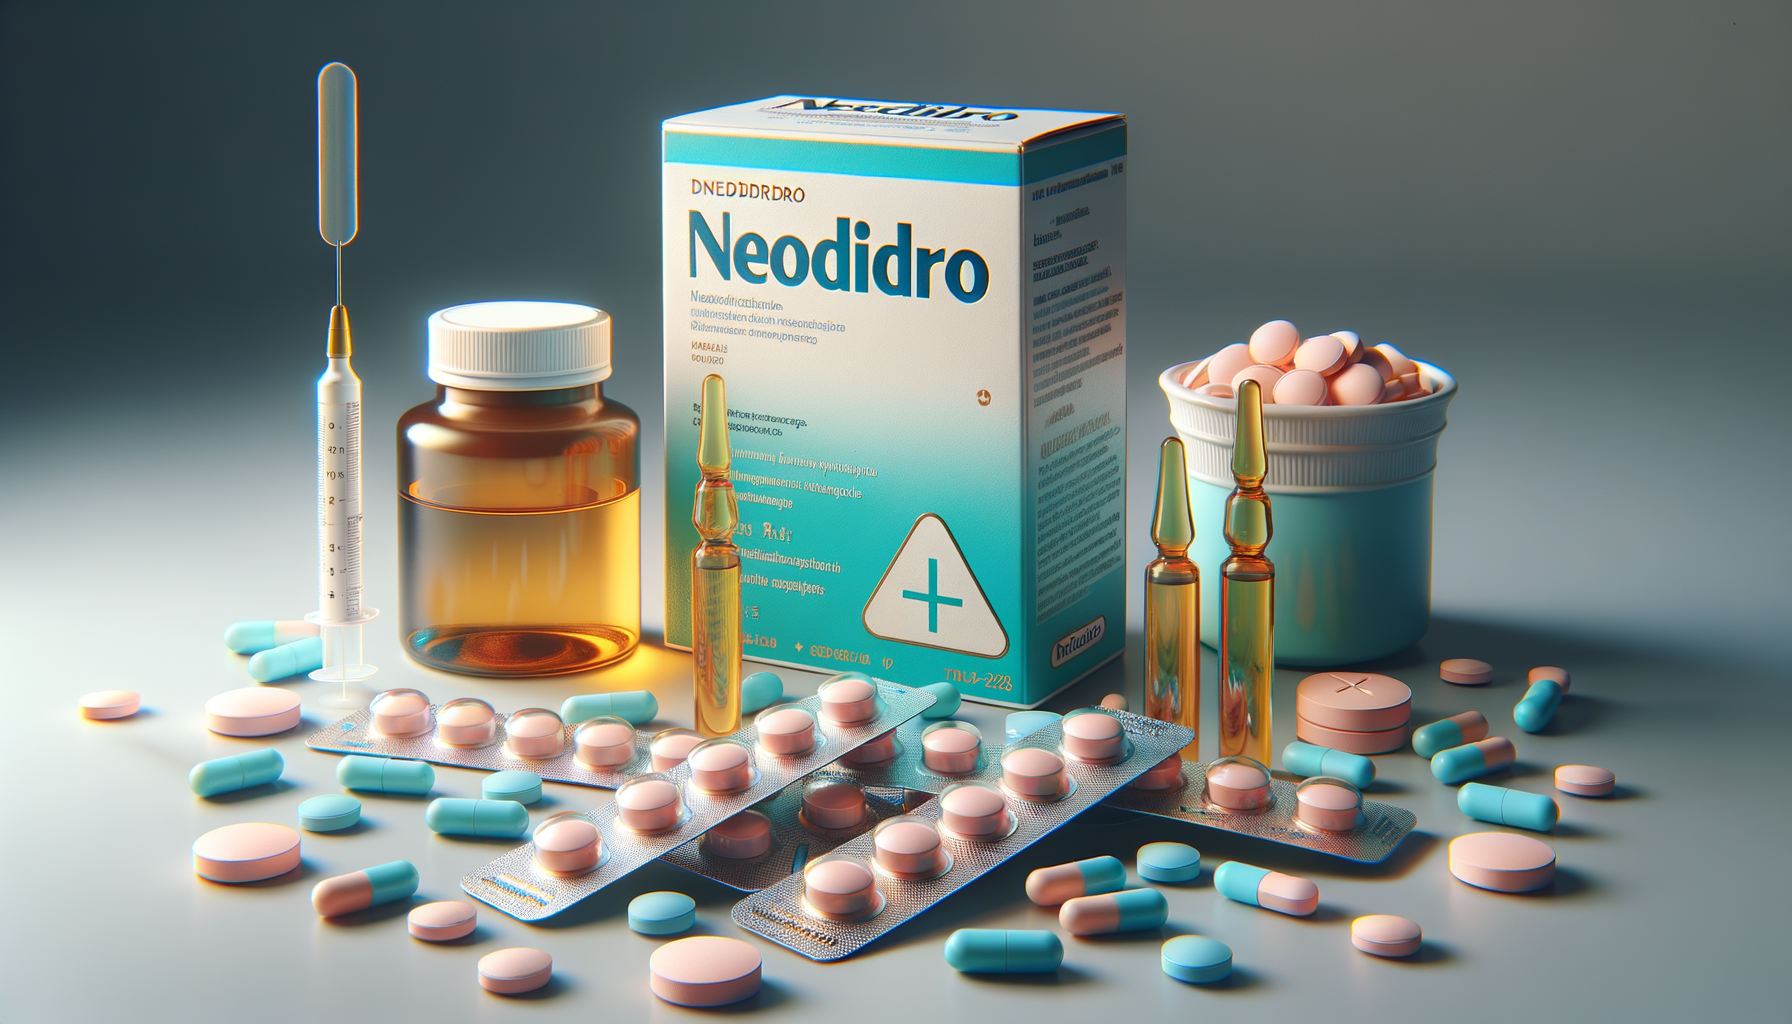 Neodidro 0 266 mg e mutuabile?